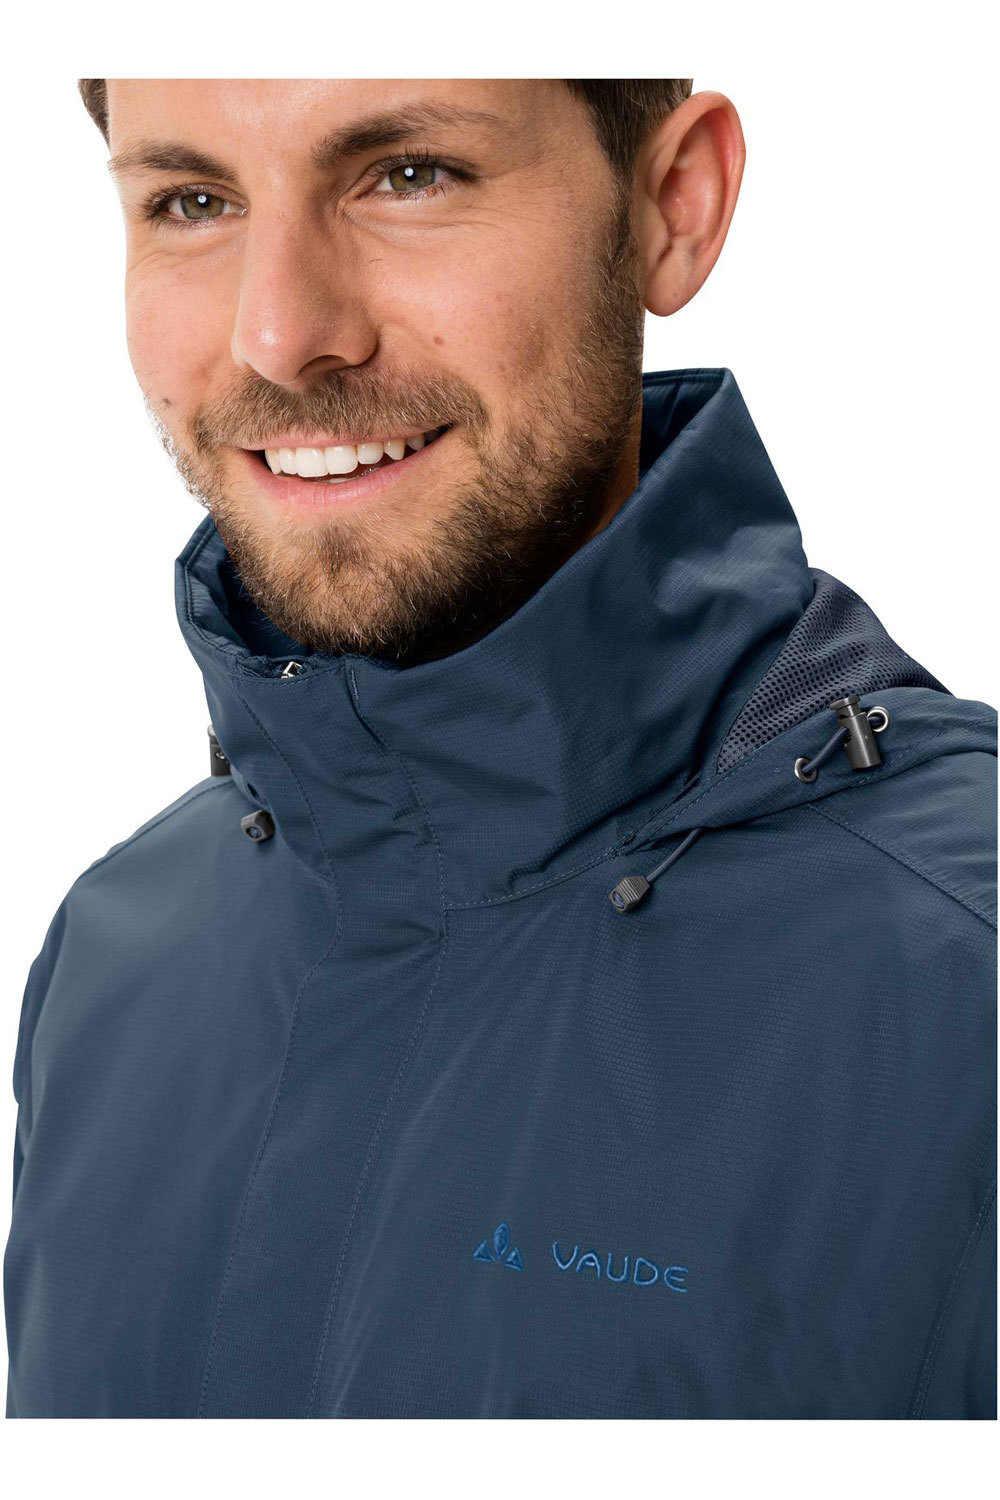 Vaude chaqueta impermeable hombre Men  s Escape Light Jacket 03